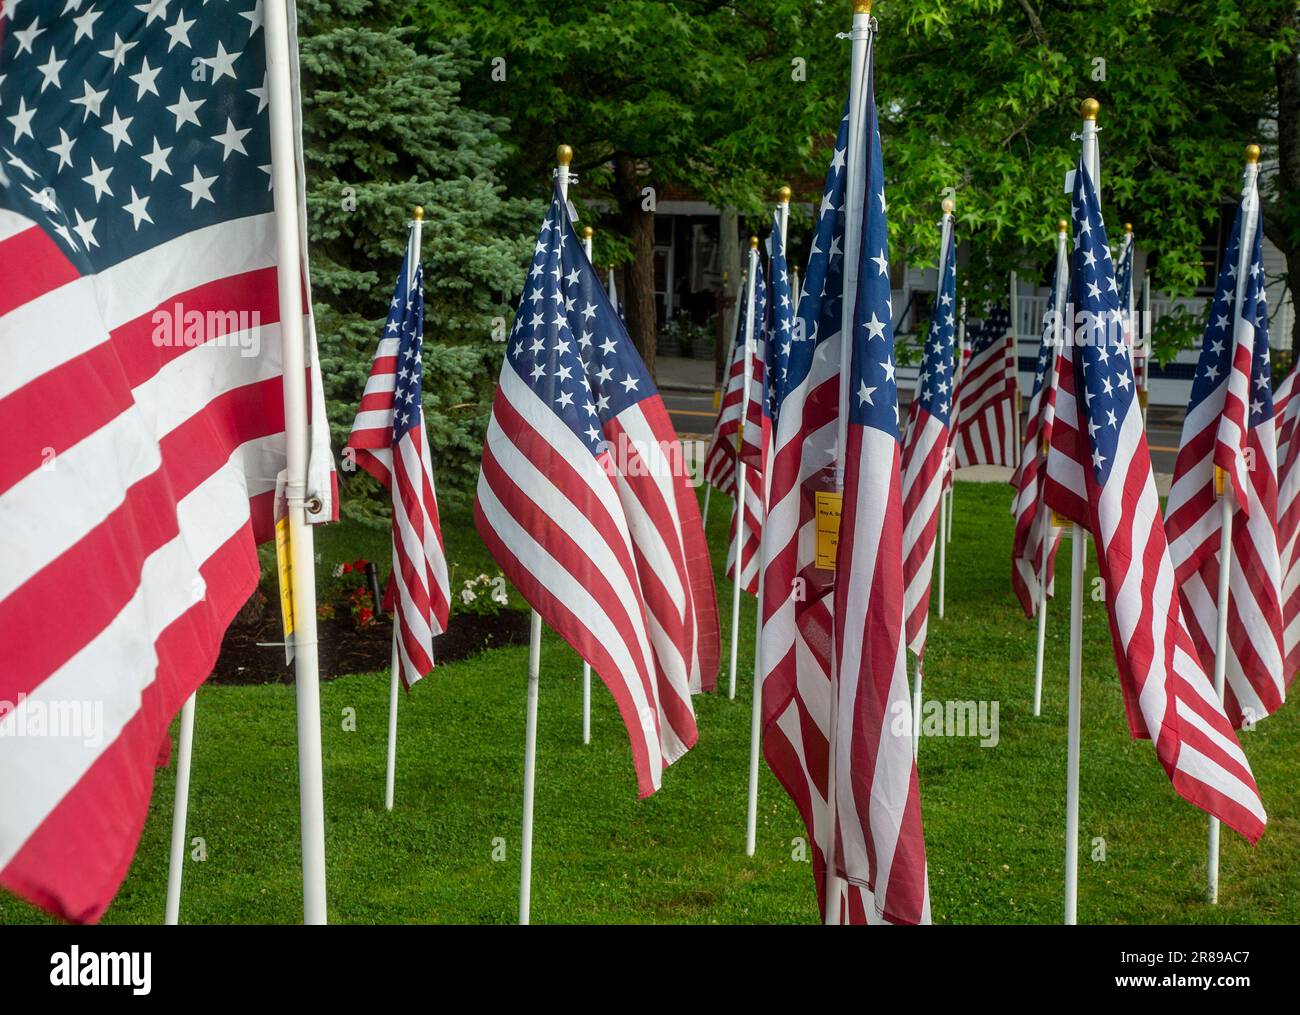 Drapeaux américains exposés dans un parc de la station balnéaire de Greenport, NY Banque D'Images